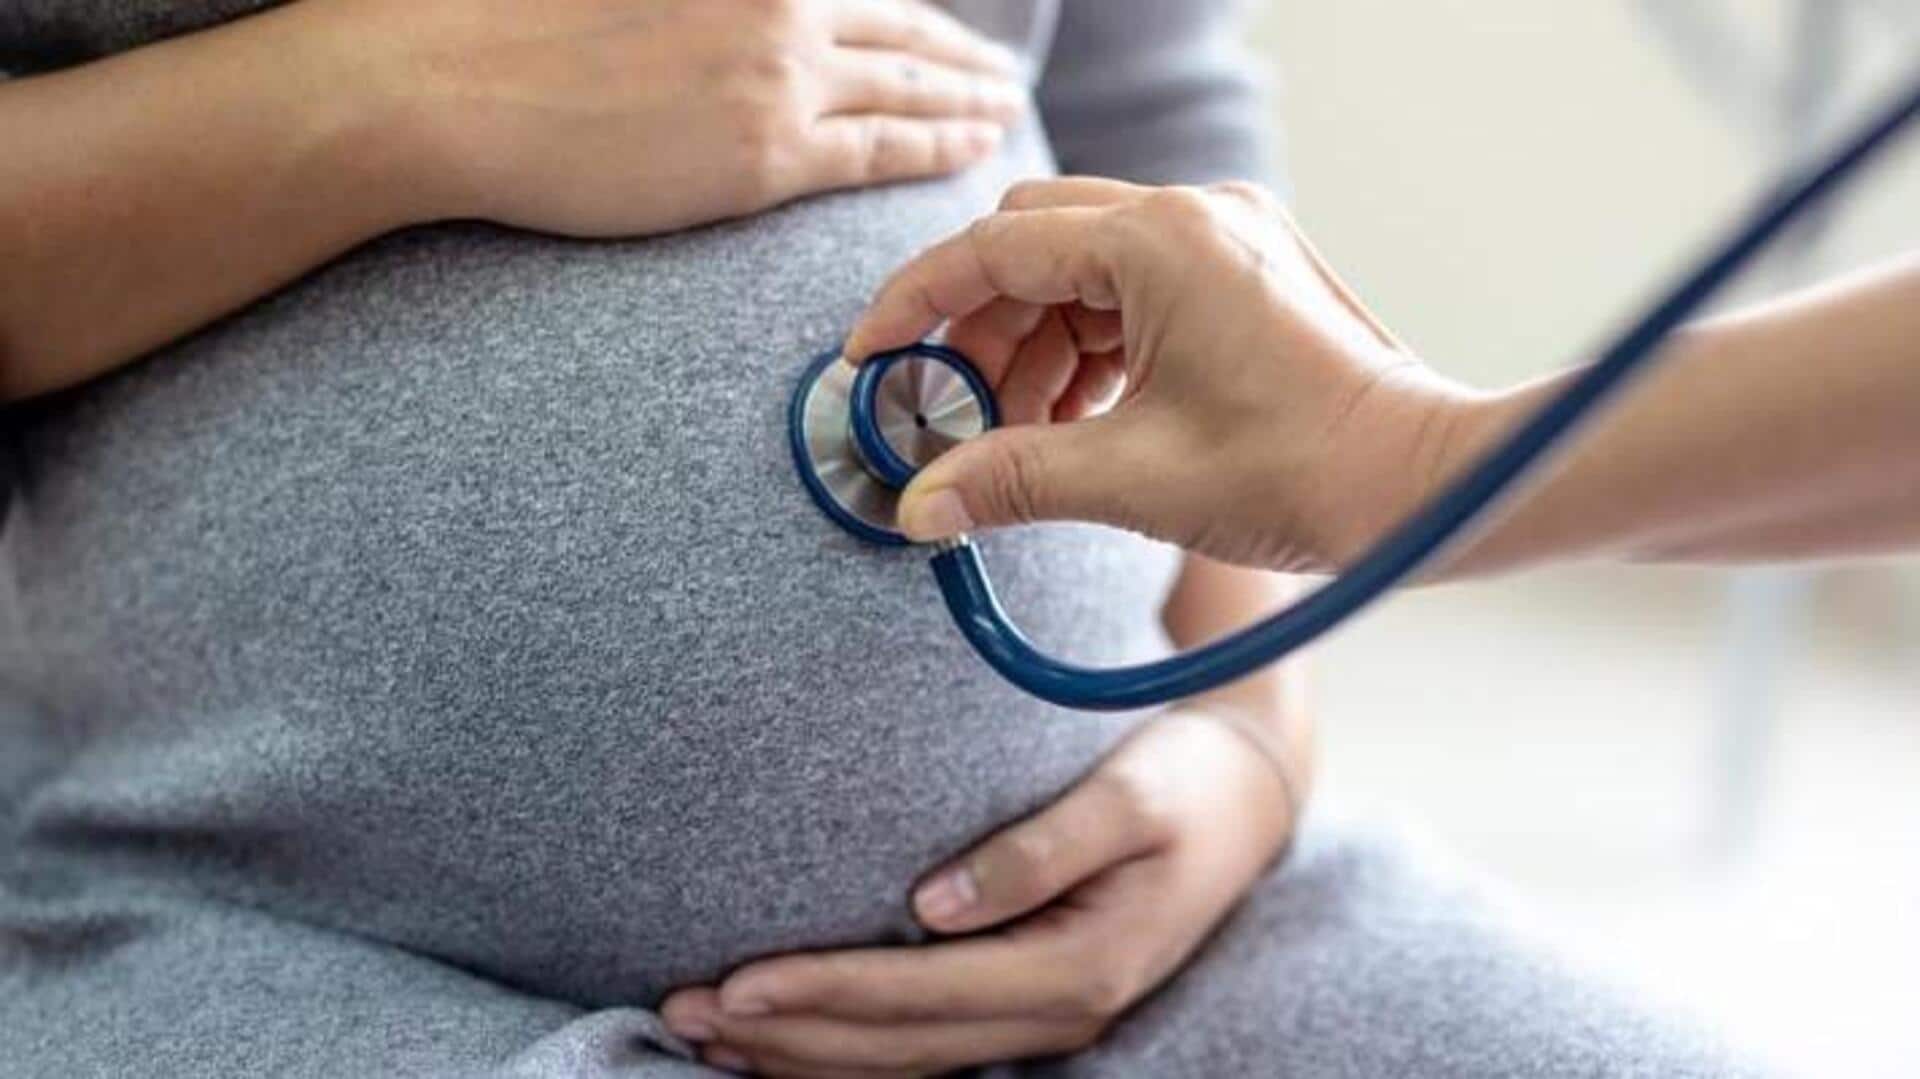 गर्भावस्था में कब-कब महिलाओं को डॉक्टर से जांच करवानी चाहिए?